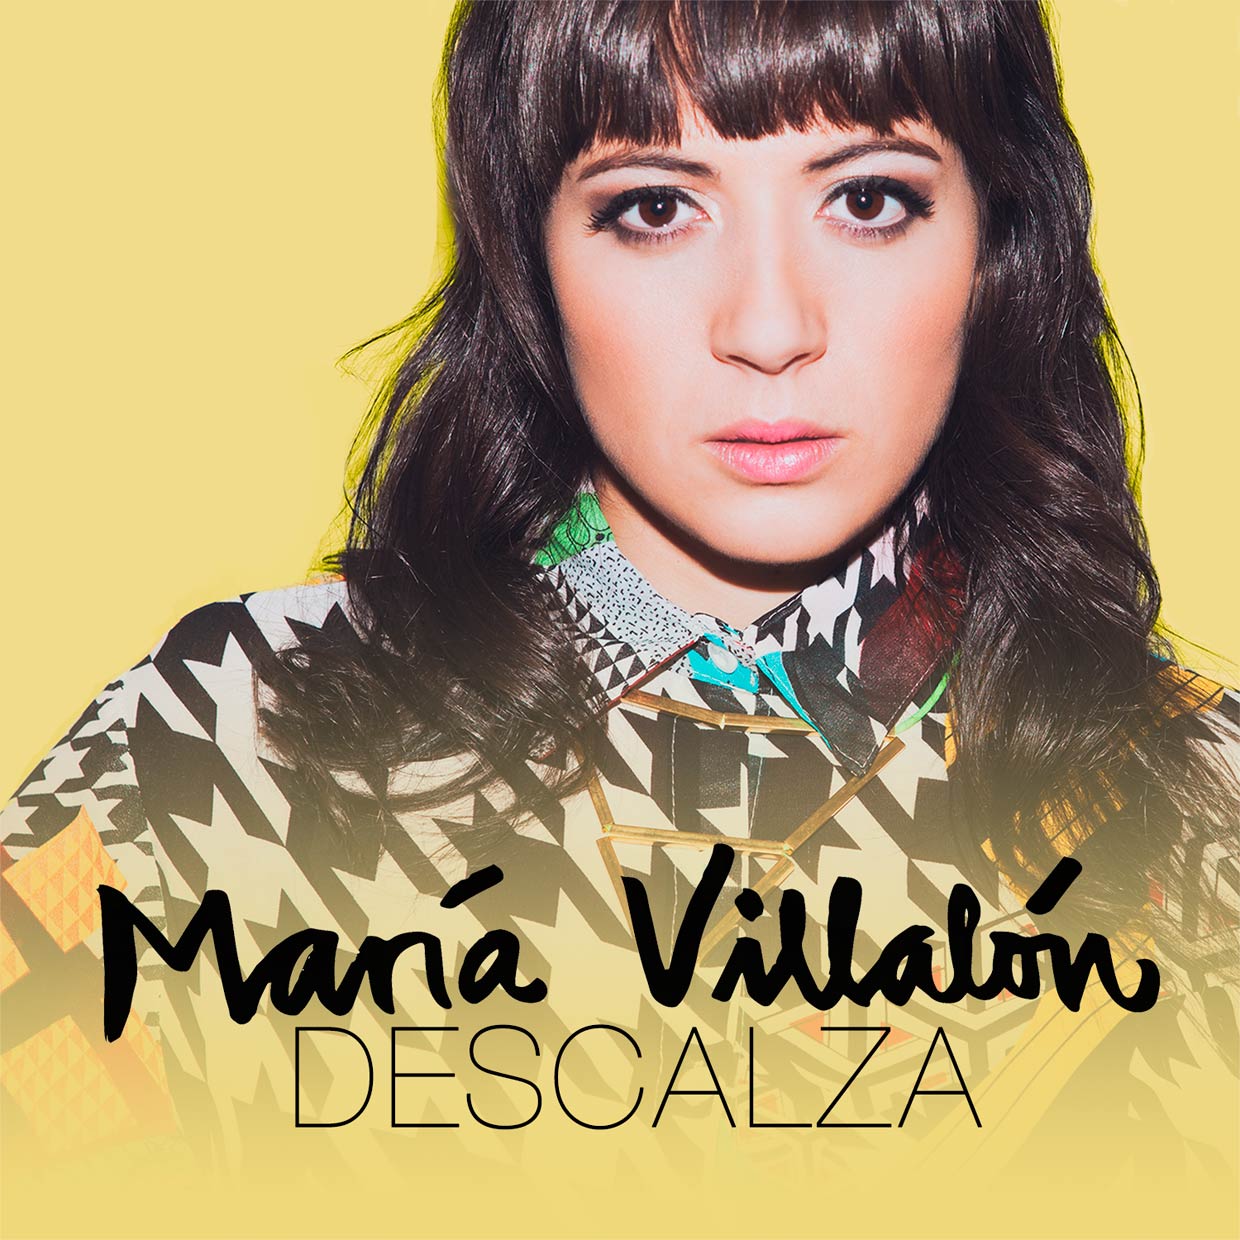 María Villalón: Descalza, la portada de la canción1240 x 1240